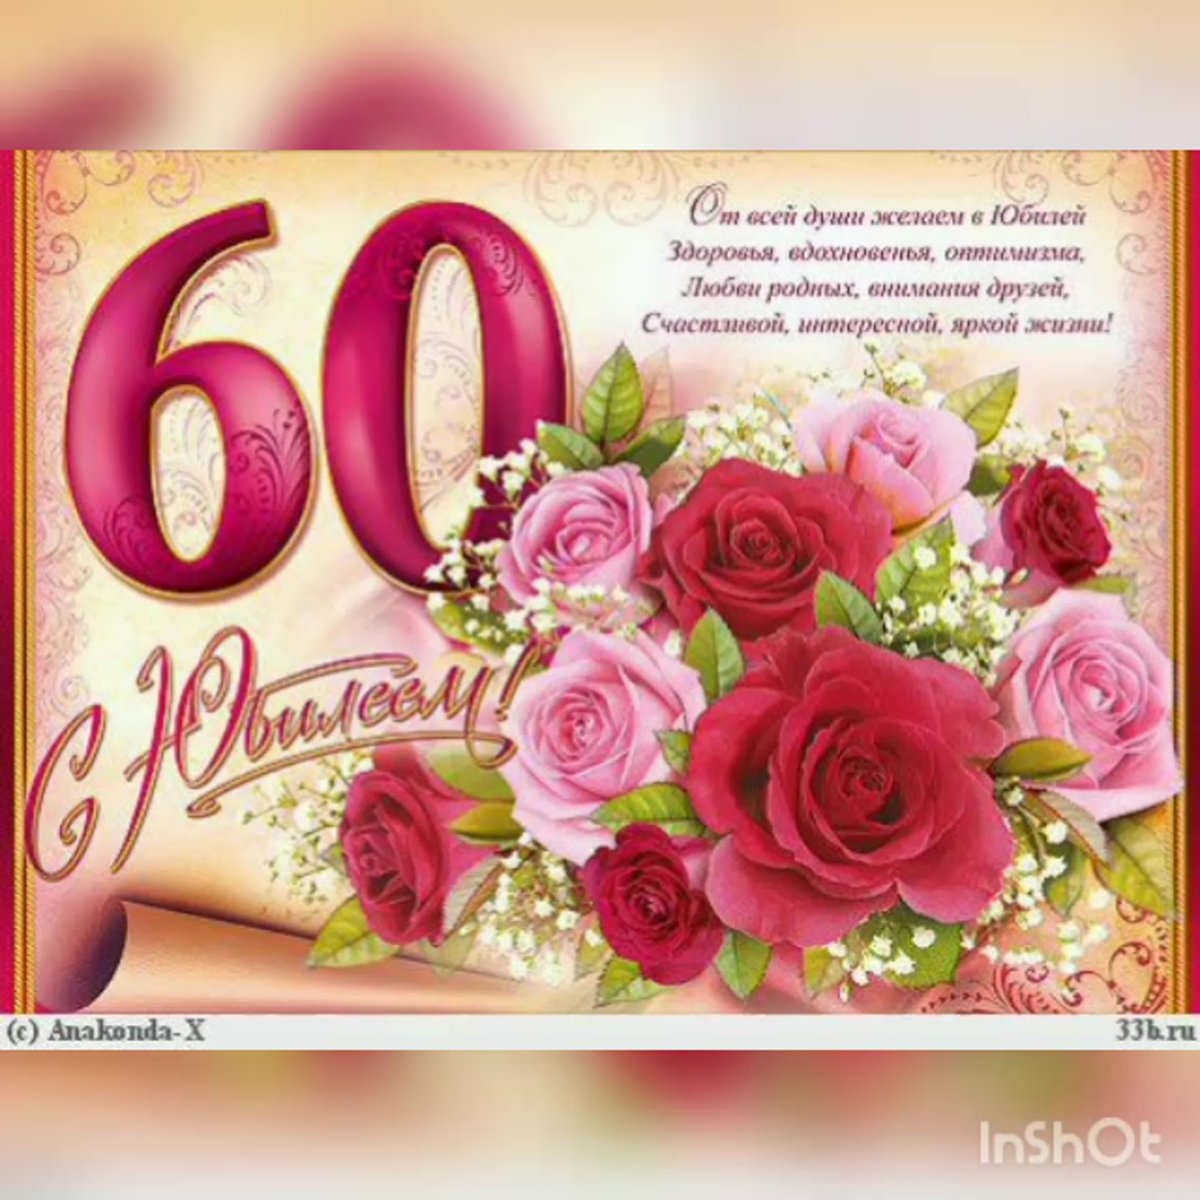 Поздравления с днем рождения маме на татарском языке - Поздравления и тосты